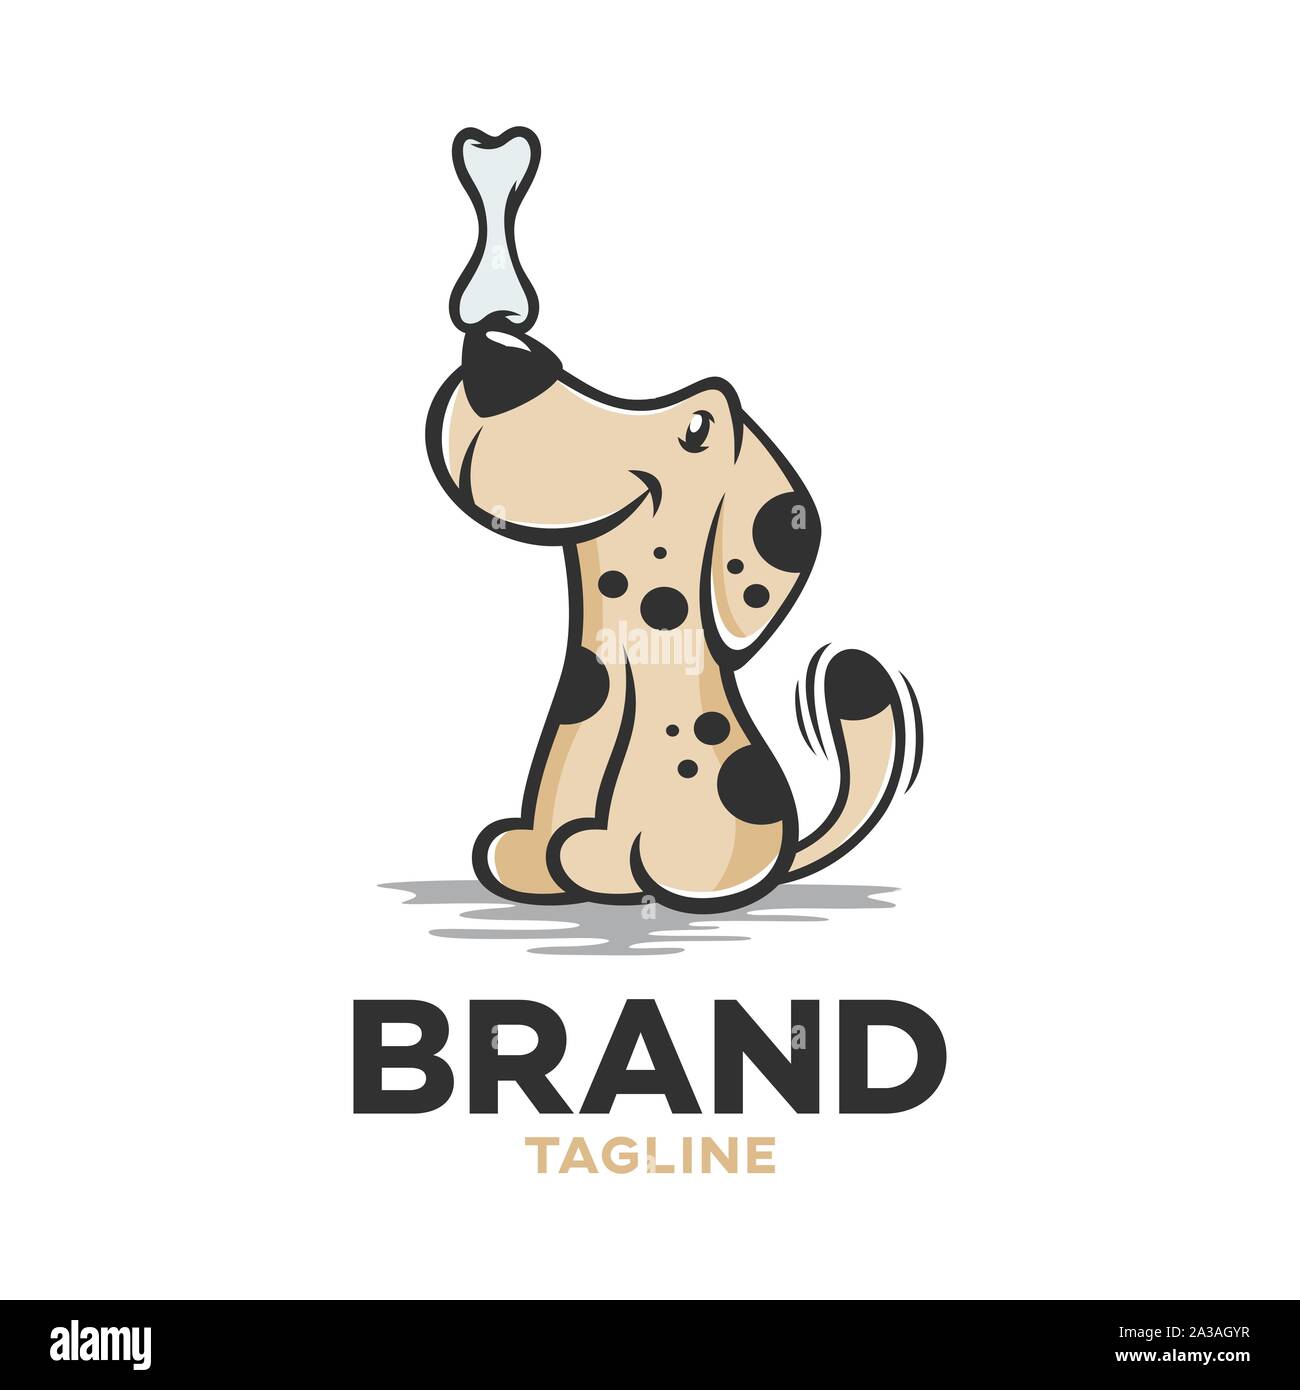 Modernes logo Hund mit Knochen Stock Vektor